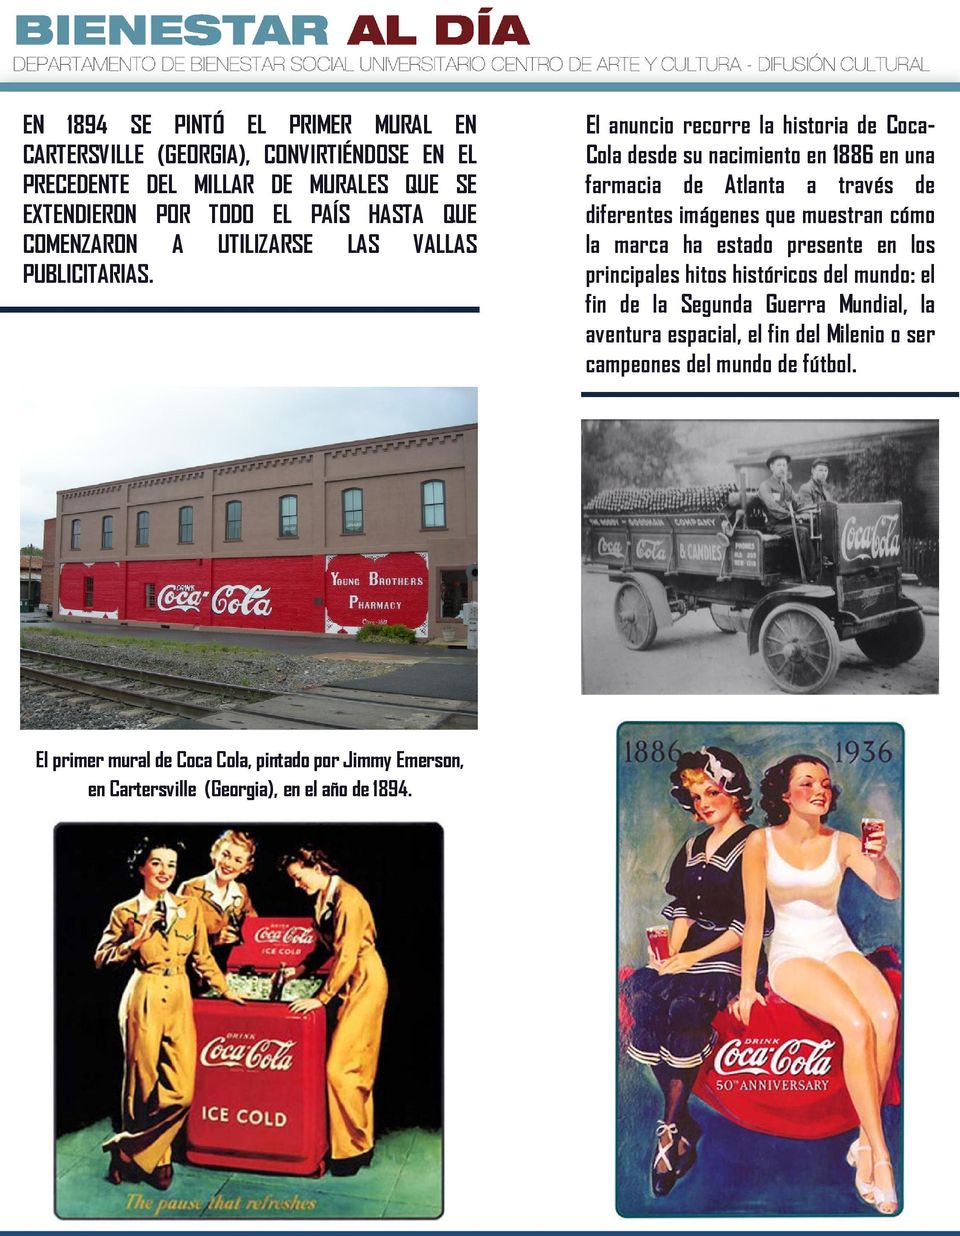 El anuncio recorre la historia de Coca- Cola desde su nacimiento en 1886 en una farmacia de Atlanta a través de diferentes imágenes que muestran cómo la marca ha